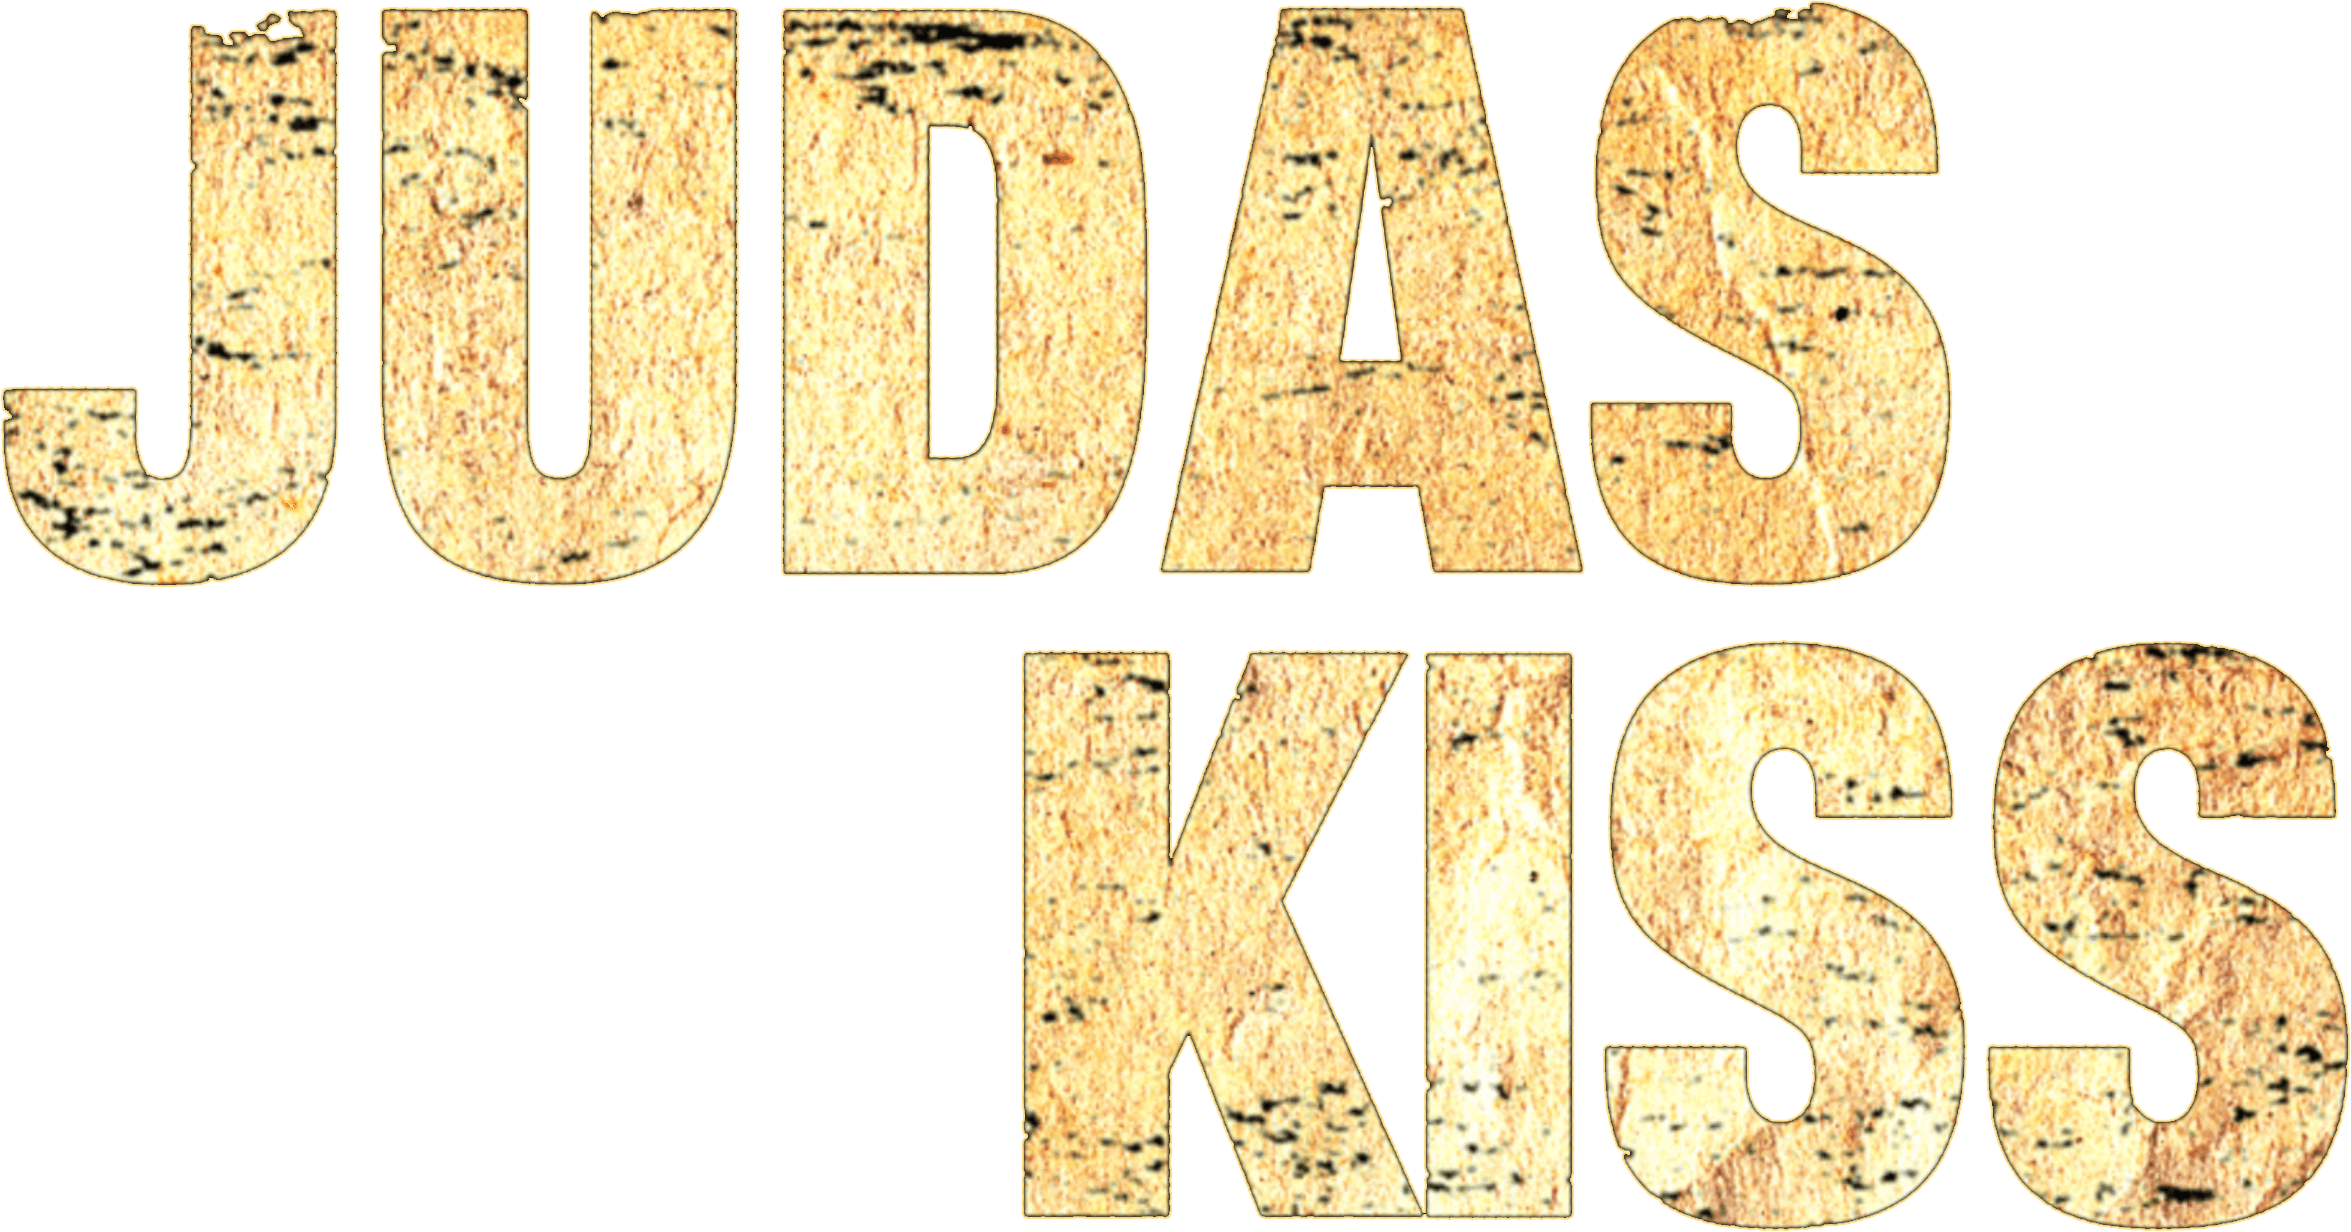 Judas Kiss logo